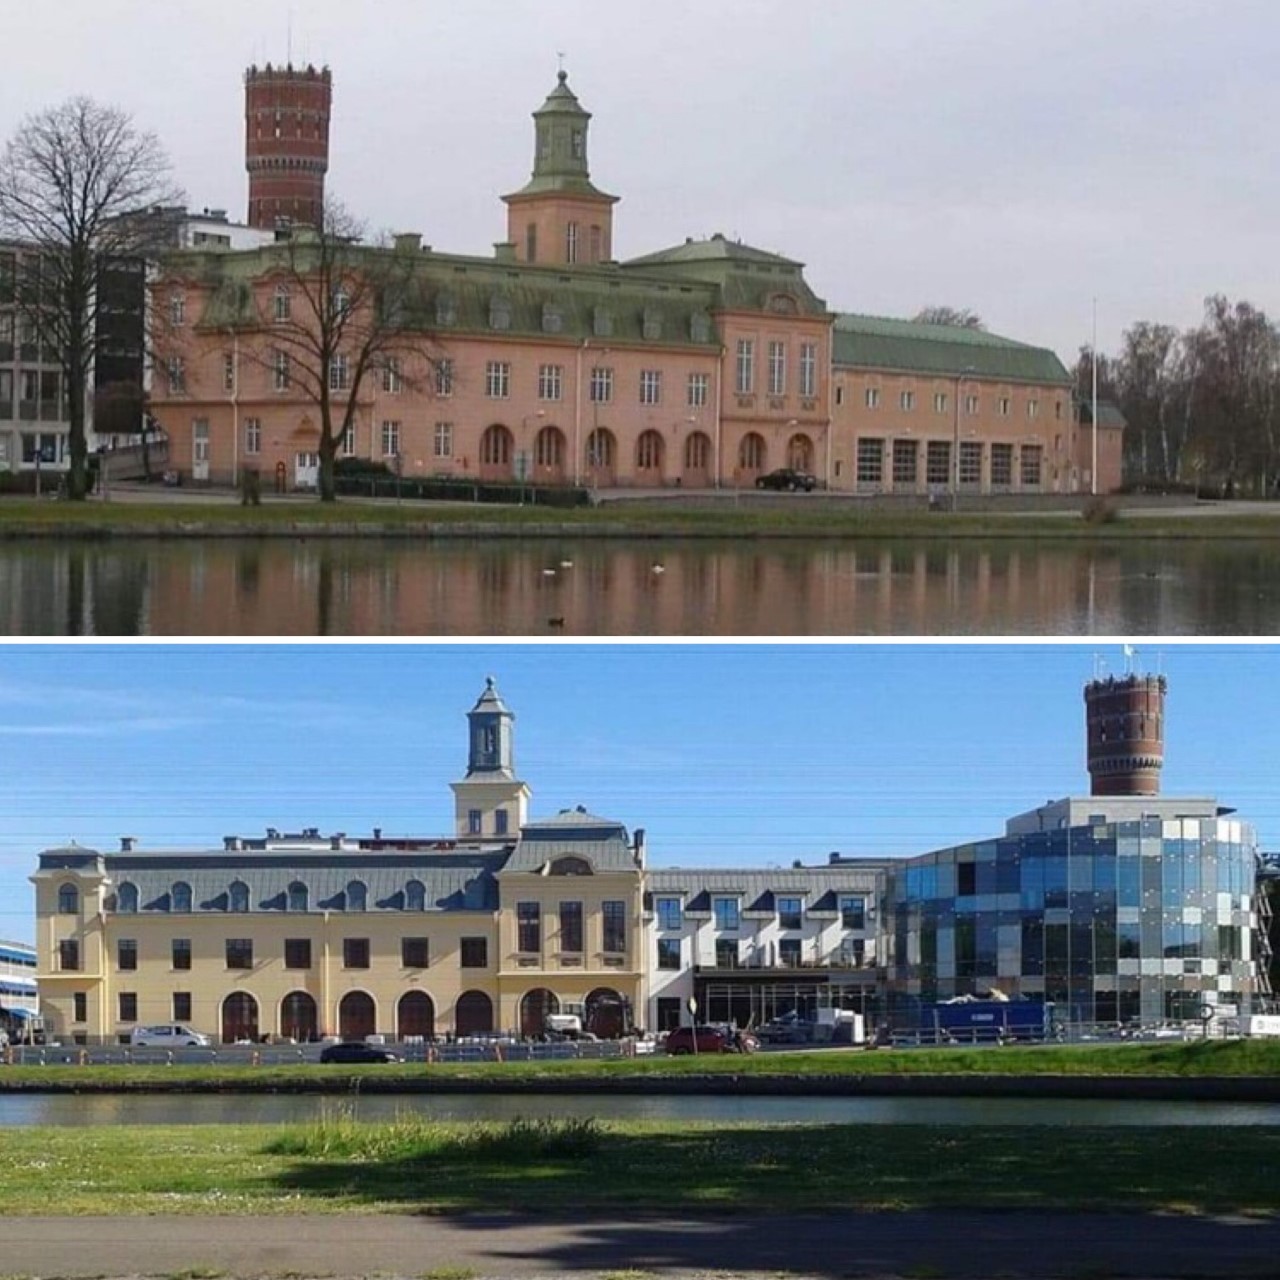 Är glashuset i Kalmar Sveriges fulaste nyproduktion 2020? Jämför före och efter förfulningen.